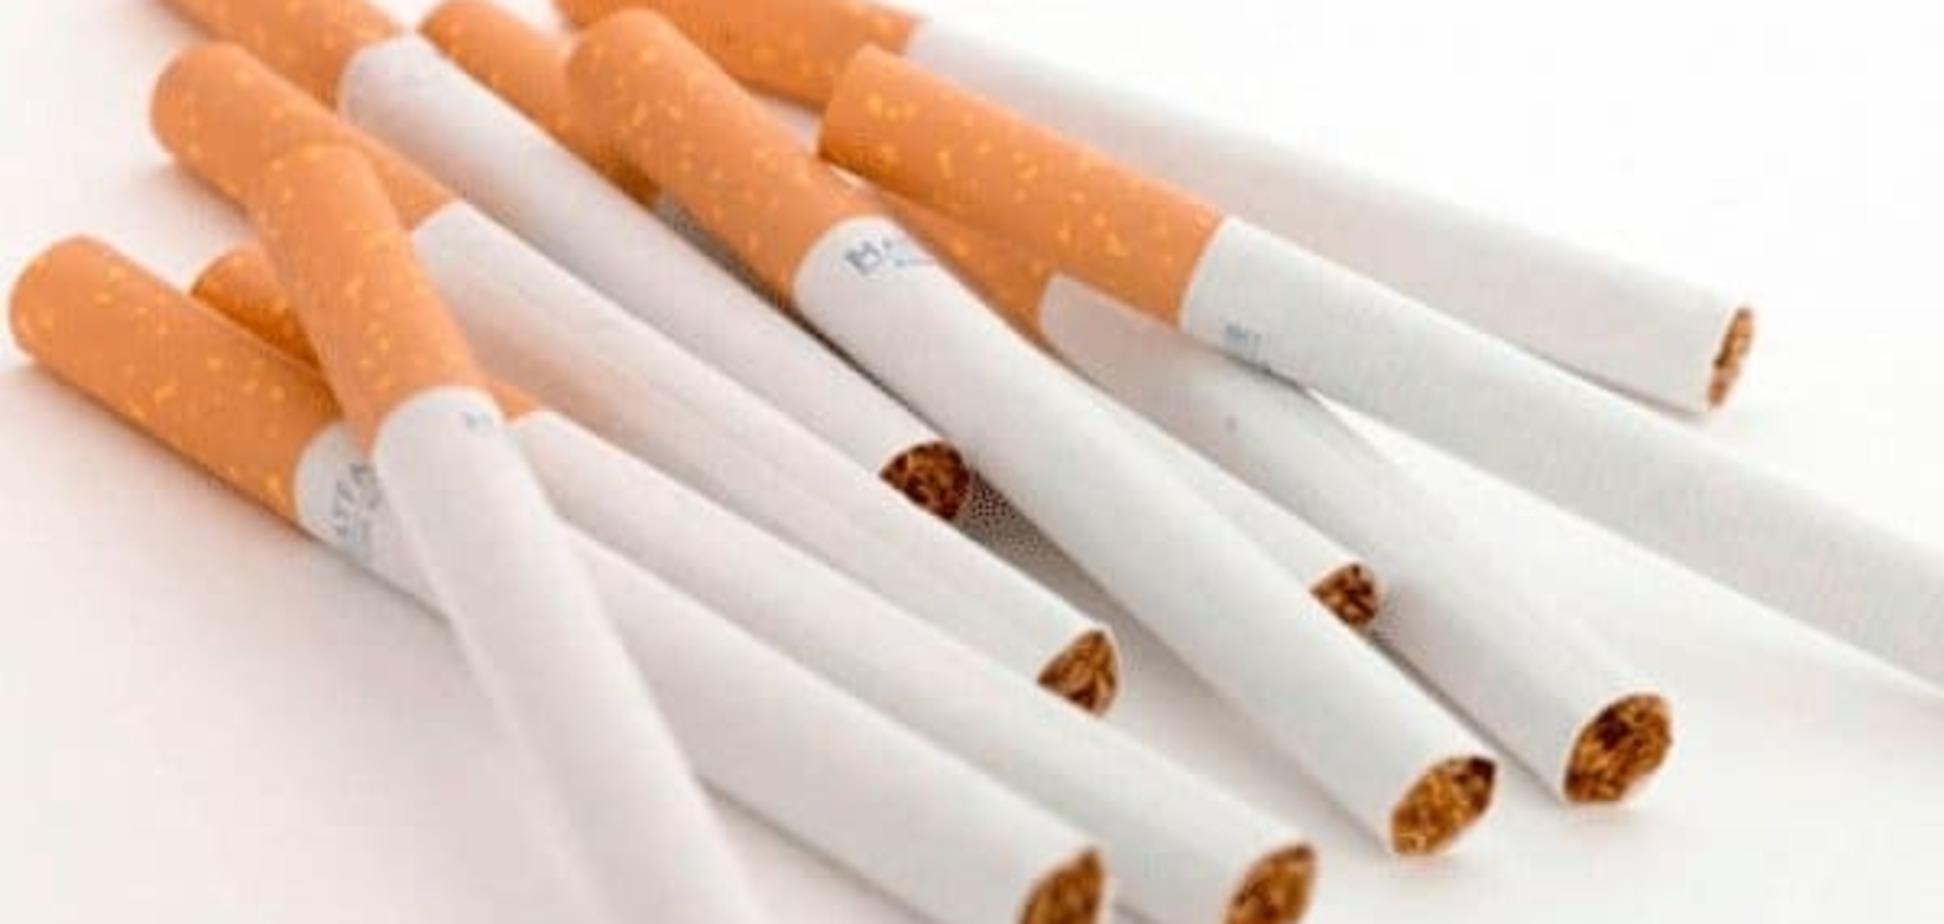 Нездоровая экономия: сигареты стали самым дешевым товаром